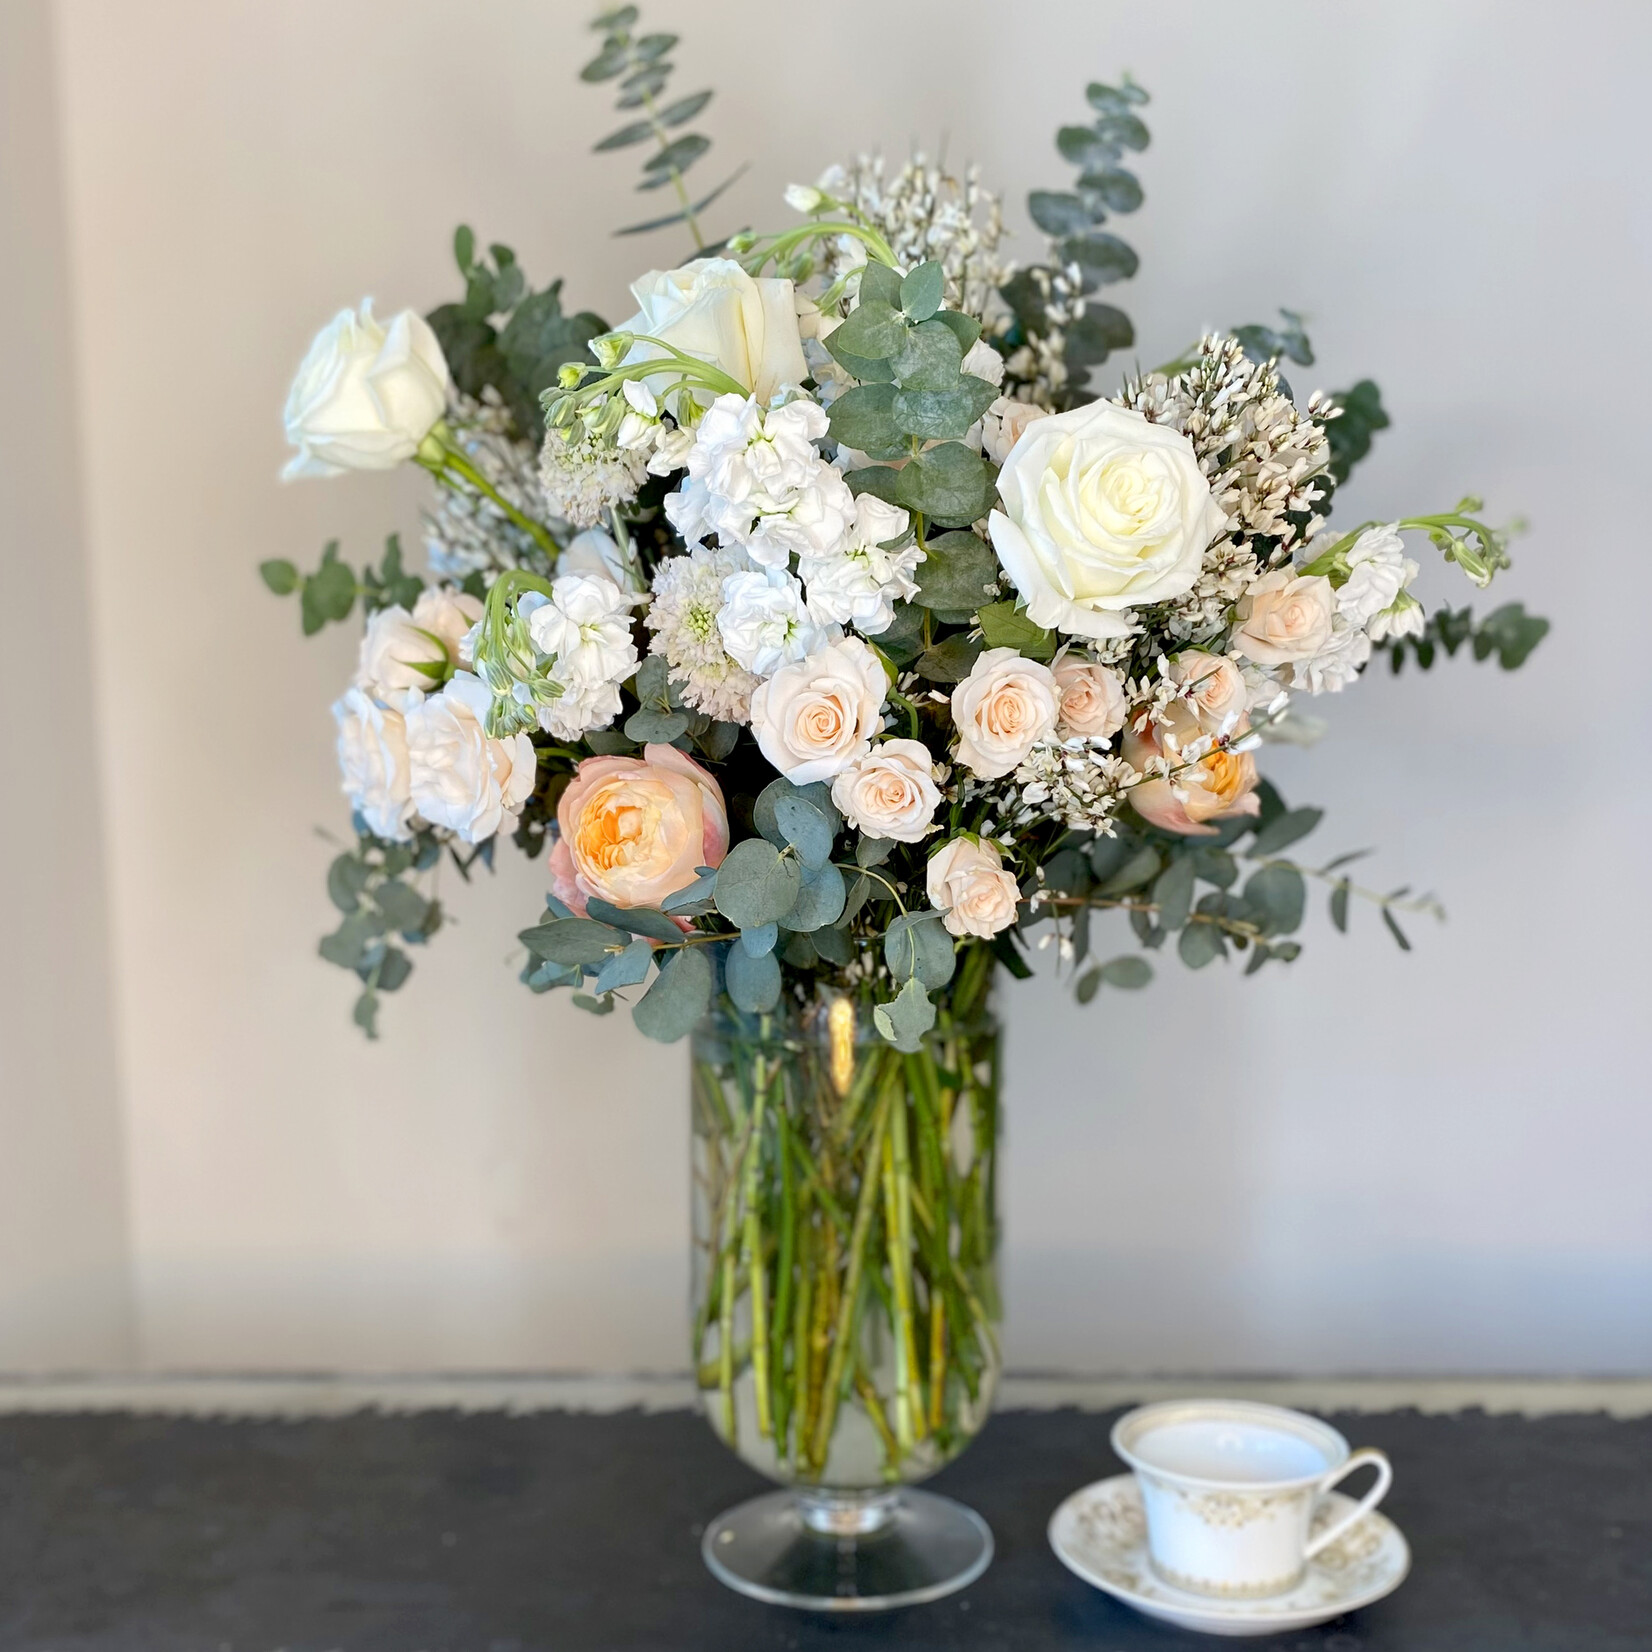 Luxe Sized Flower Arrangements – Neutral Tones: $200 - $250